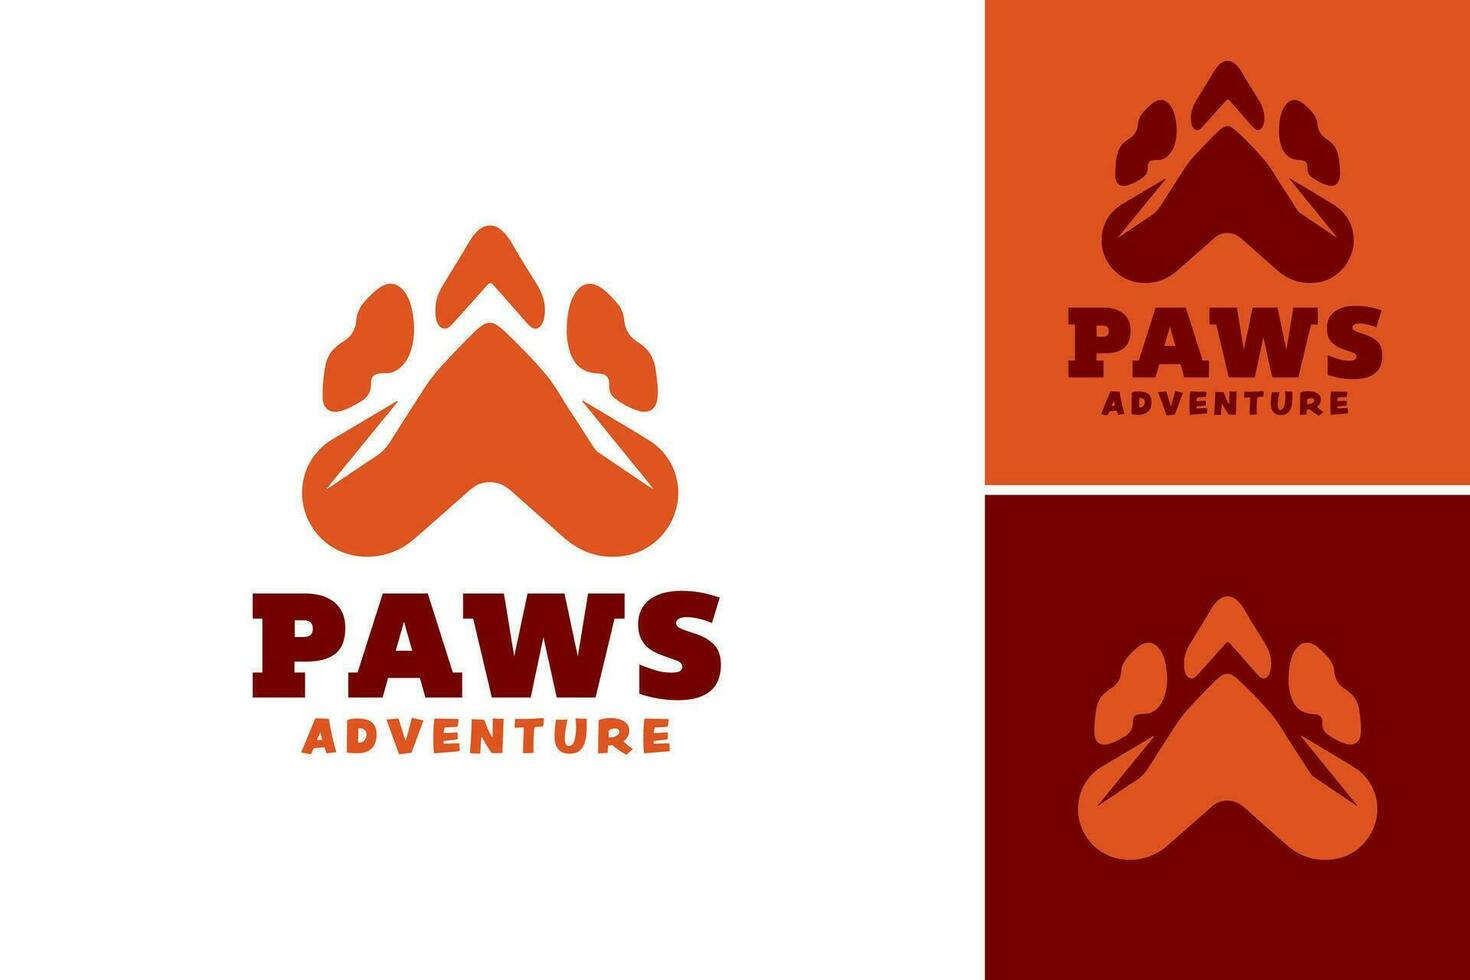 pattes aventure logo est une conception atout adapté pour entreprises ou des produits en relation à animaux, animaux domestiques, ou Extérieur aventures. il pouvez être utilisé comme une logo, symbole, ou graphique élément sur divers plates-formes. vecteur